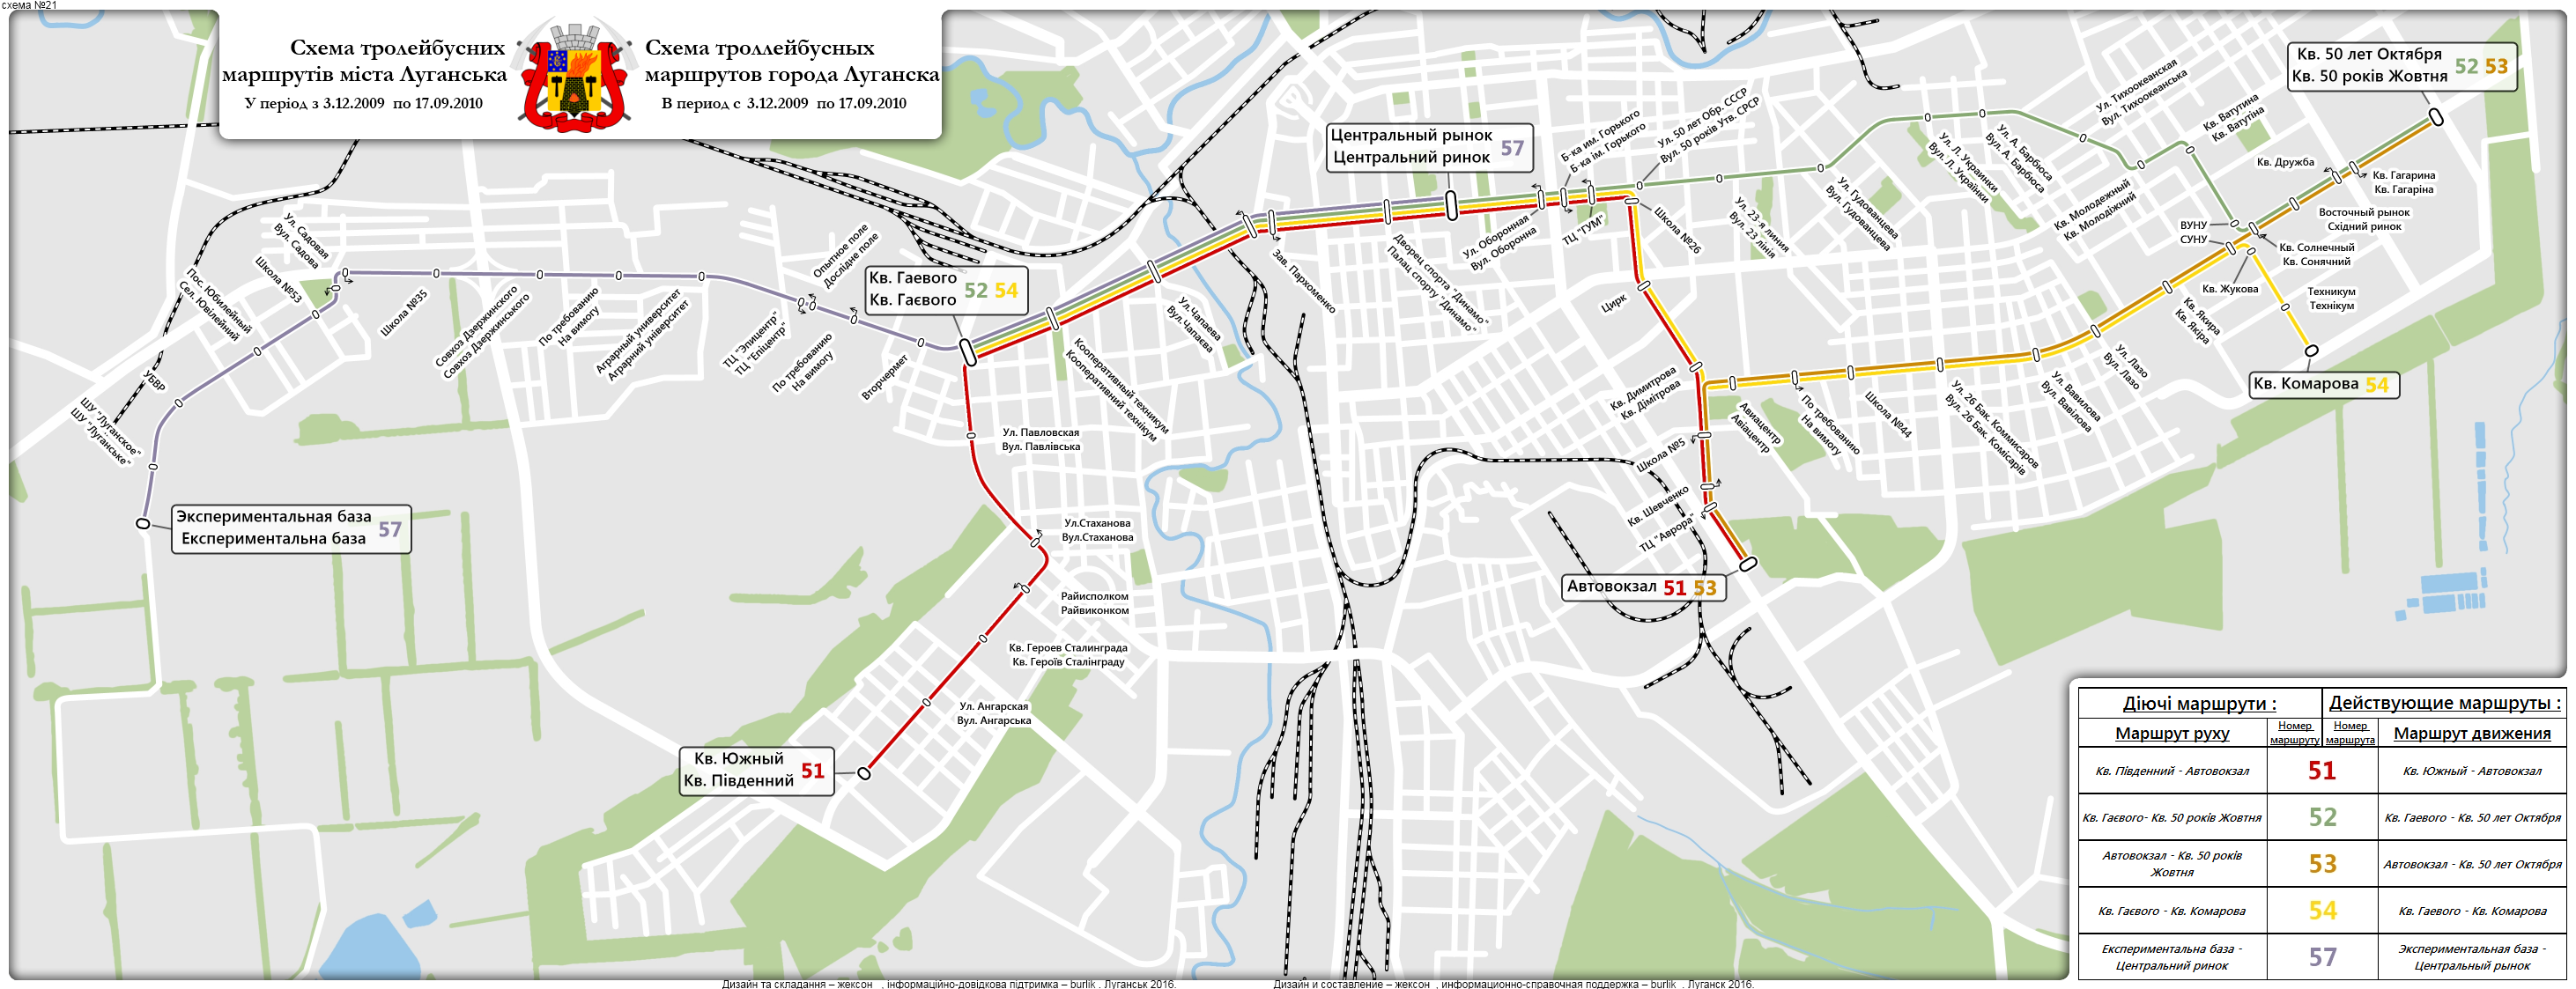 Номера автобусов до центрального рынка. Схема маршрутов Луганска. Схема троллейбуса. Маршруты по Луганску. Луганск трамвай схема.